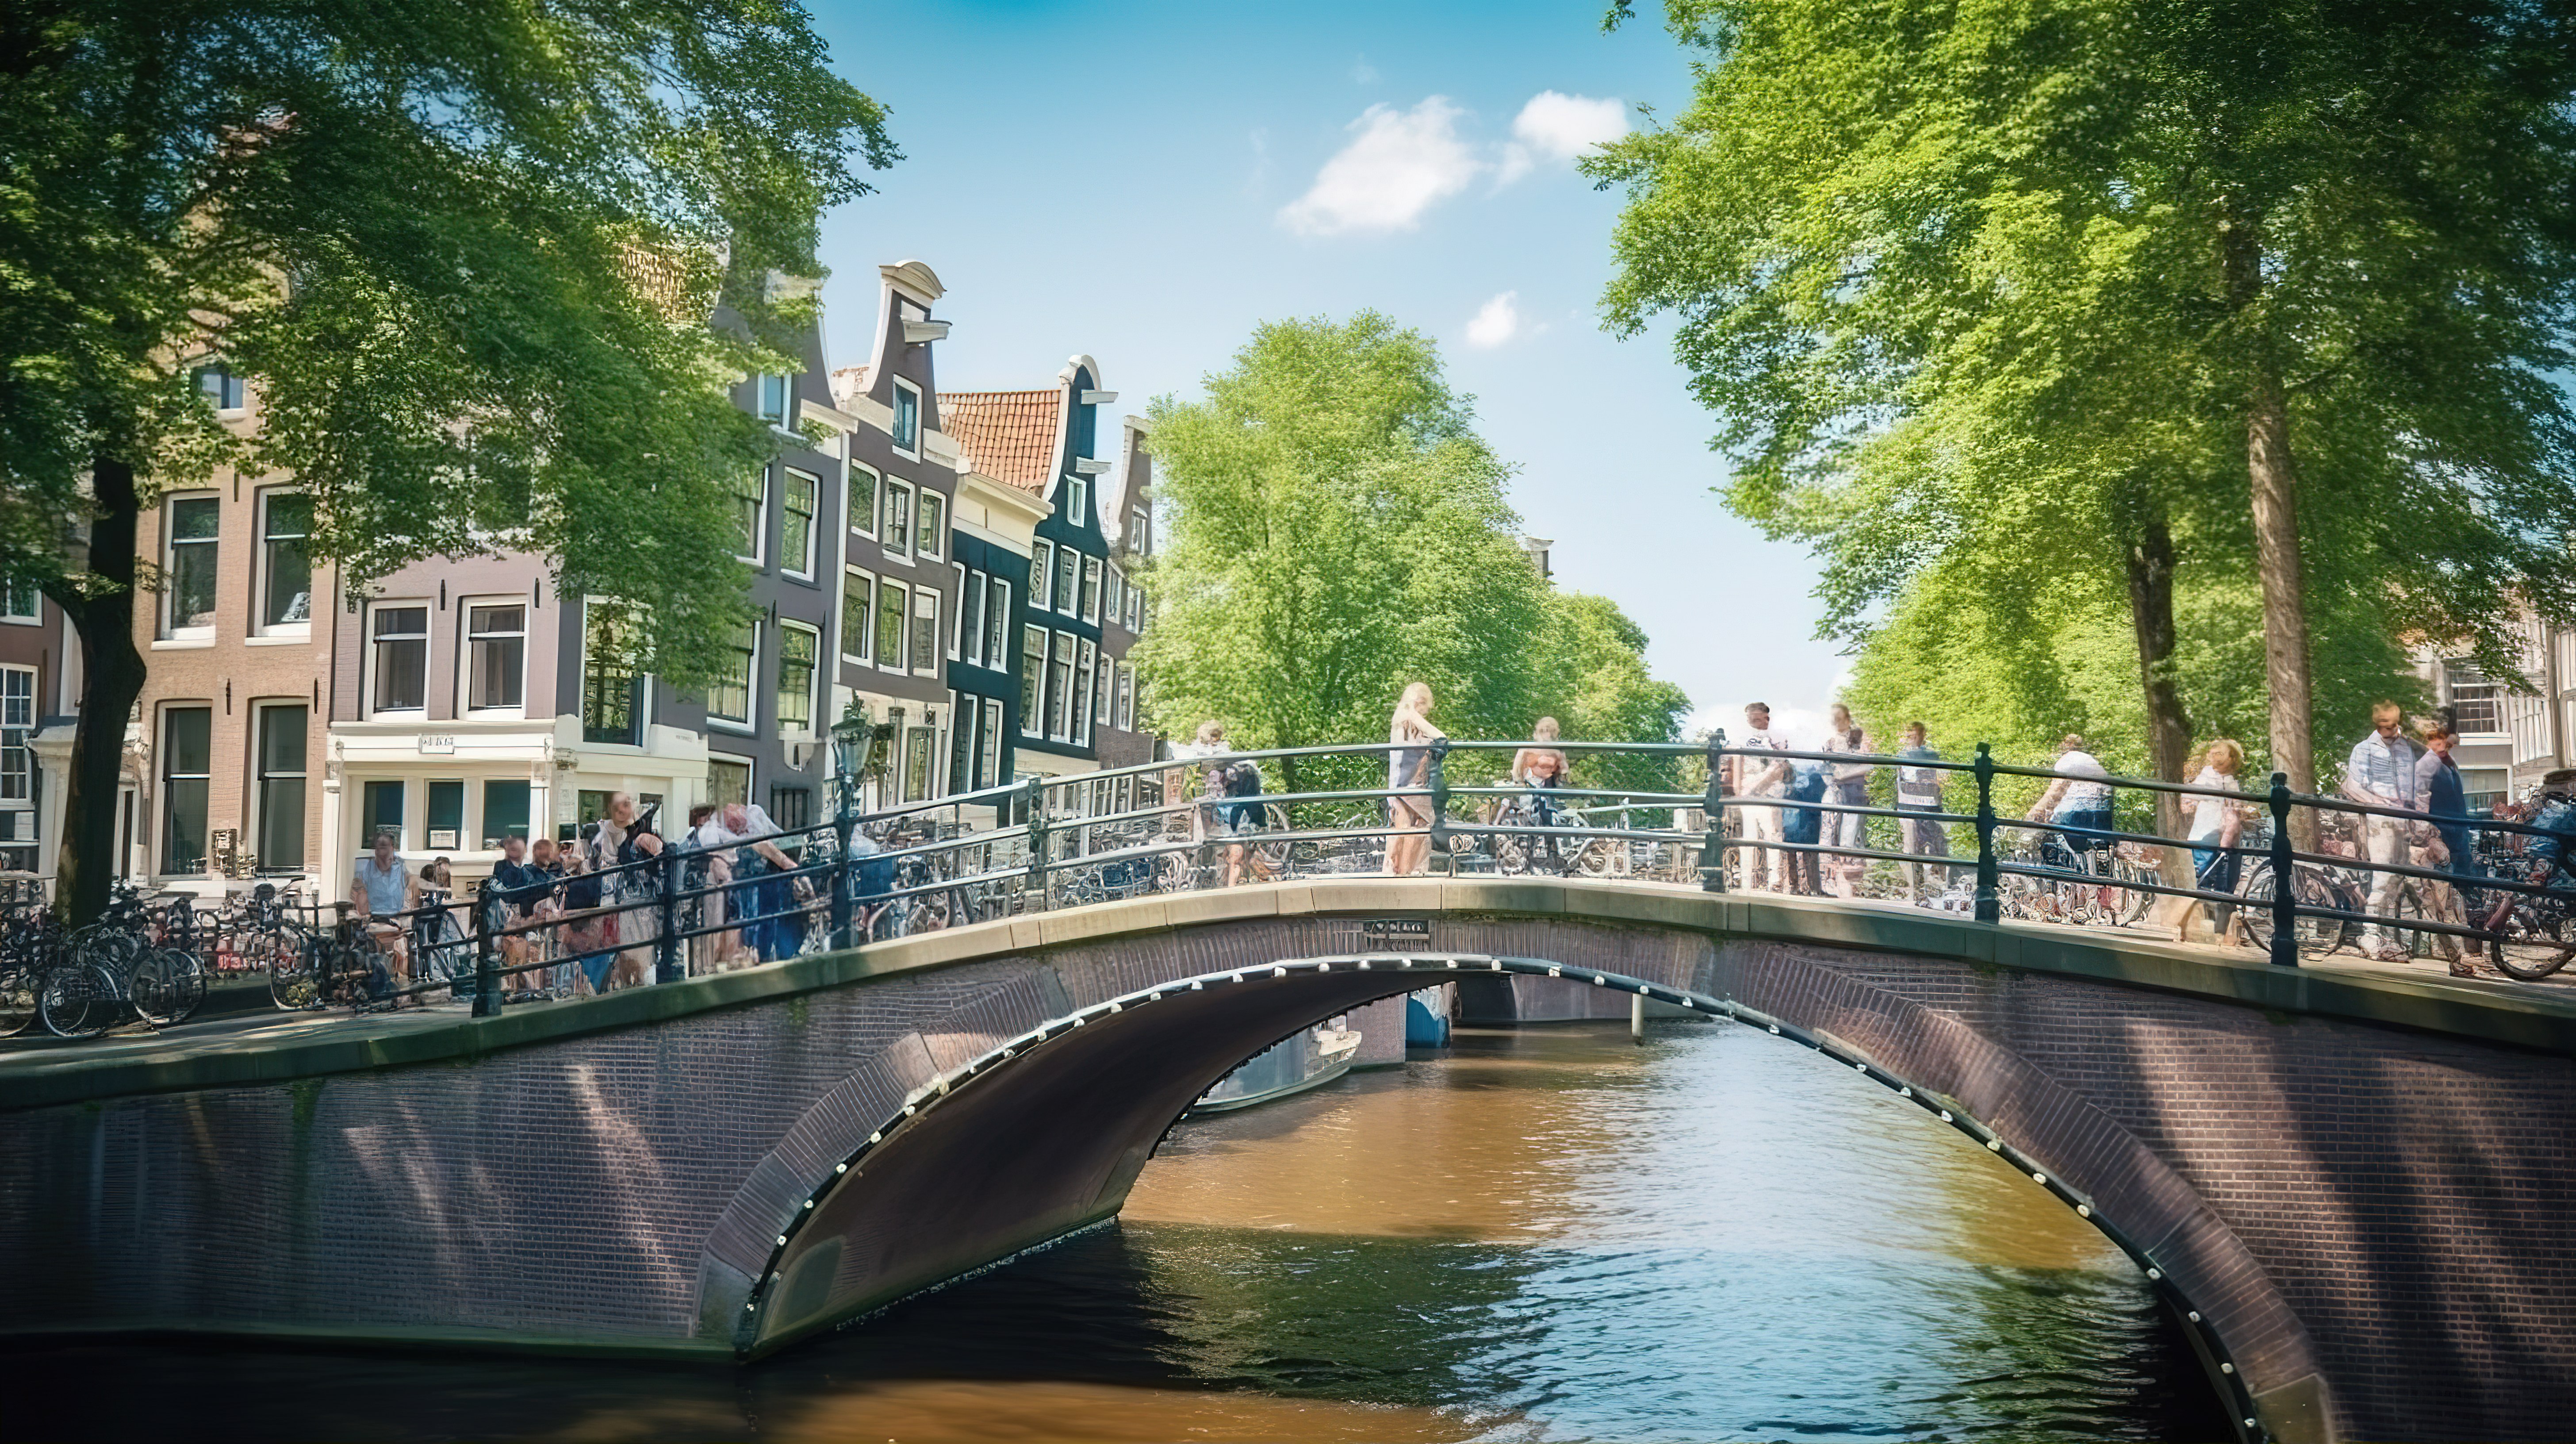 阿姆斯特丹运河桥在阳光明媚的日子 3D 打印标志仅限荷兰行人图片